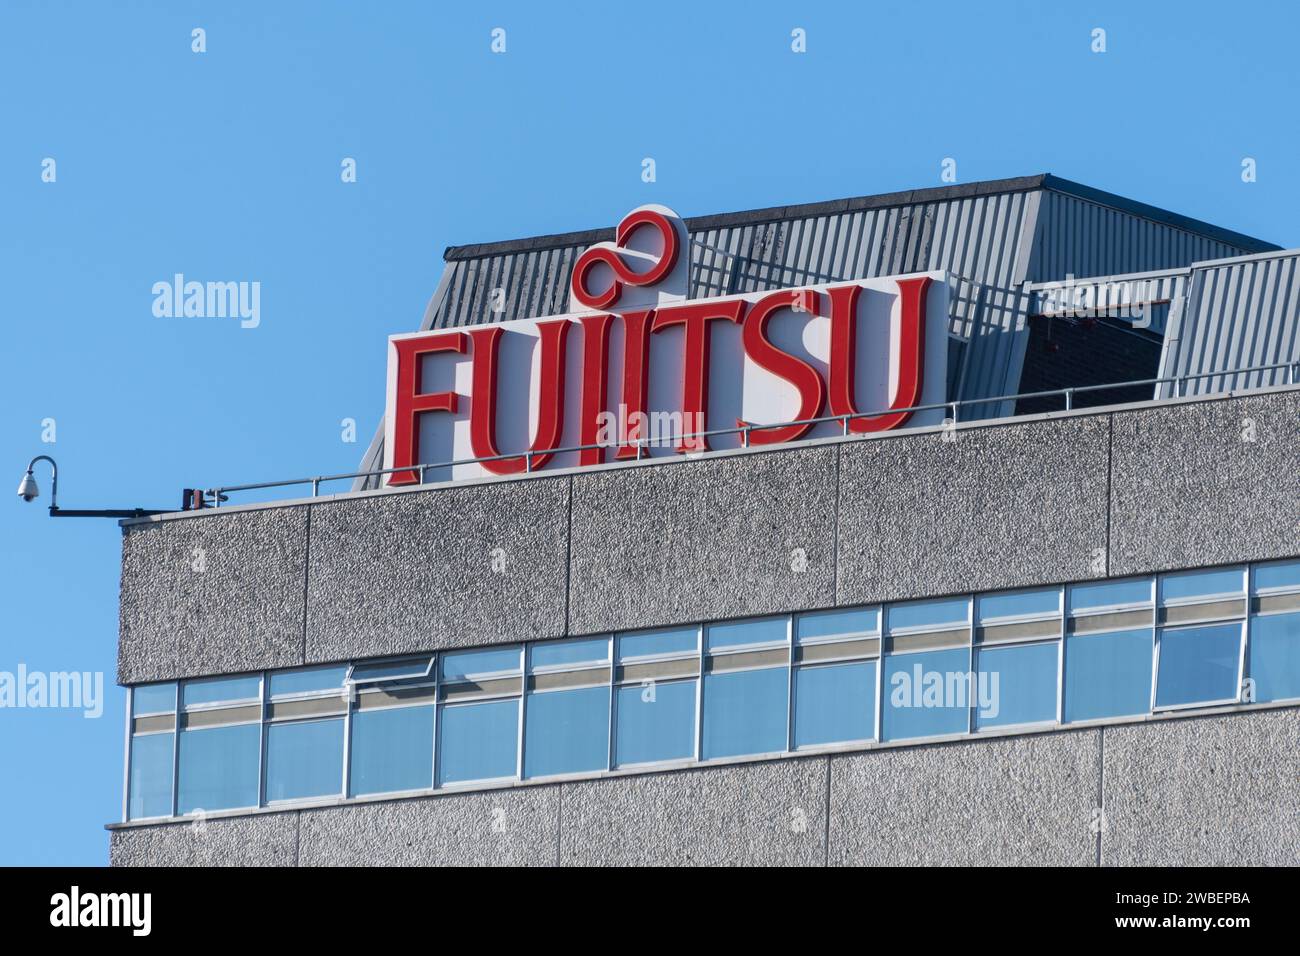 Januar 2024. Bürogebäude des Fujitsu UK Headquarters in Bracknell, England, Großbritannien. Fujitsu ist das japanische Softwareunternehmen, das für die Entwicklung der Horizon-Software verantwortlich ist, die in den britischen Postämtern verwendet wird, die derzeit im Zentrum des Skandals der britischen Post steht. Der Skandal hat diese Woche Schlagzeilen gemacht, weil ein vierteiliges ITV-Drama den Justizfehler dokumentiert, bei dem über 700 Filialmanager der Post wegen Betrugs verurteilt wurden. Stockfoto